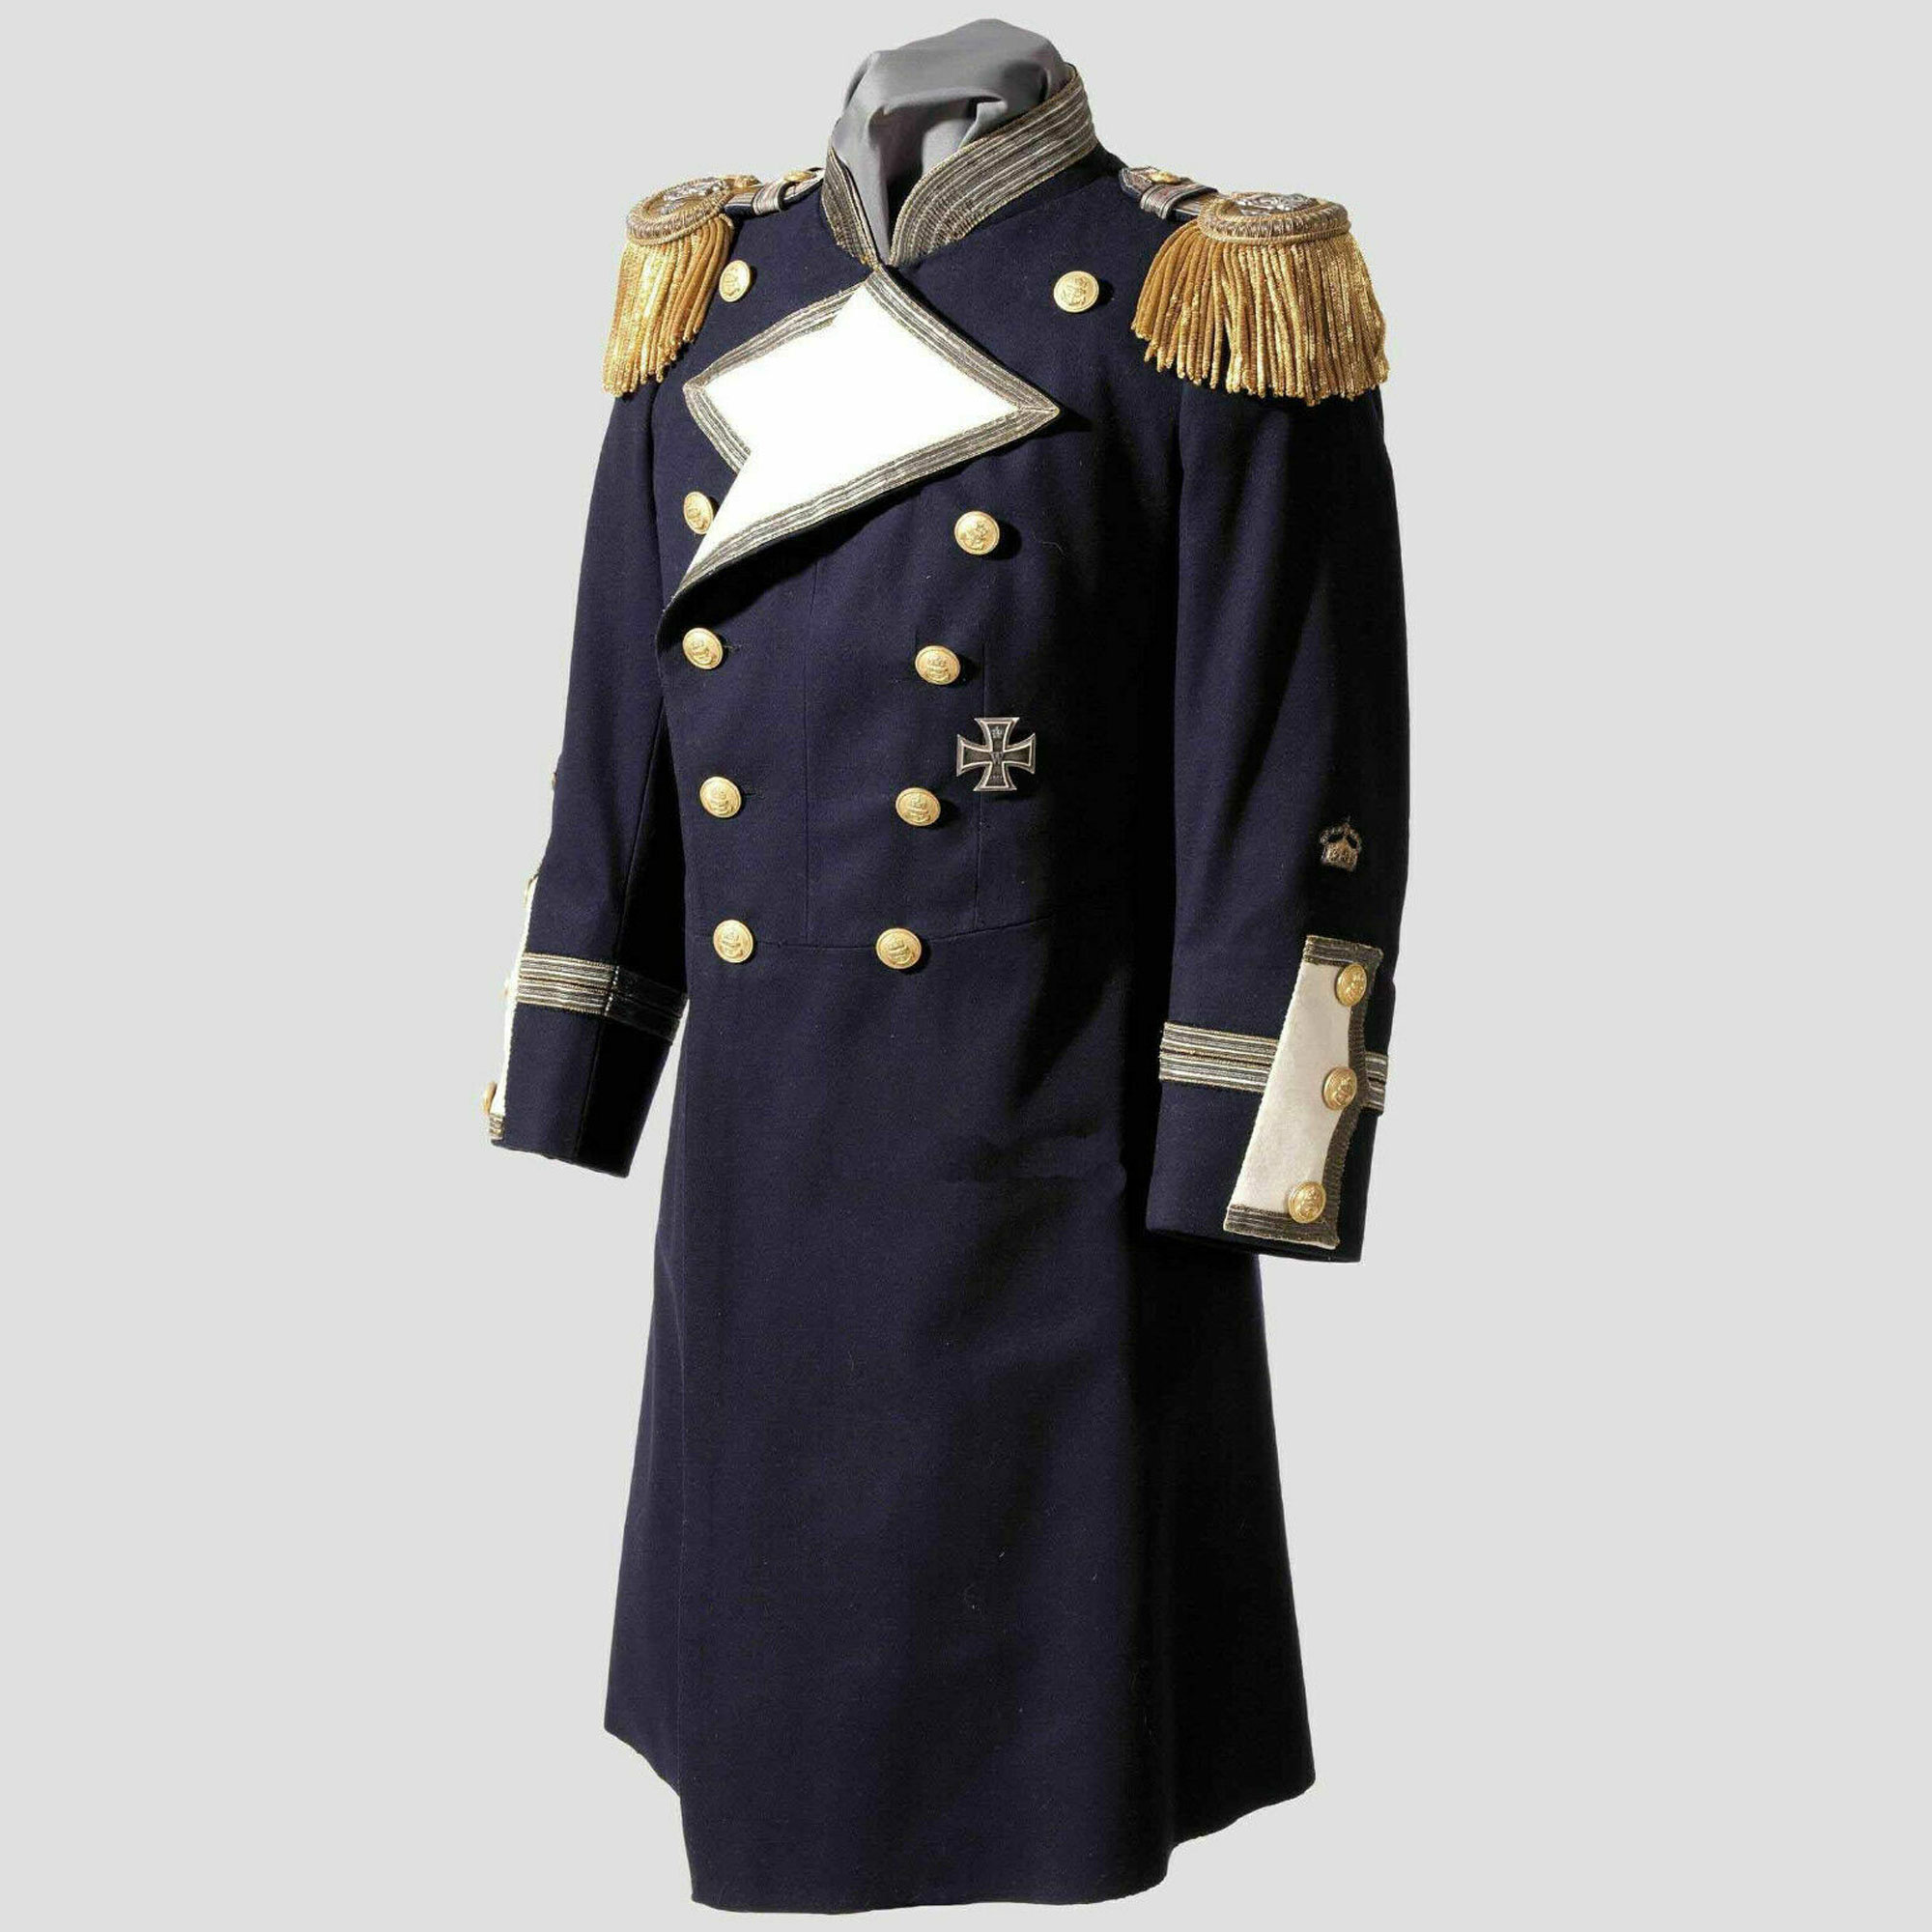 New Navy Blue Men Tailcoat Gala Uniform An Envoy Military Jacket